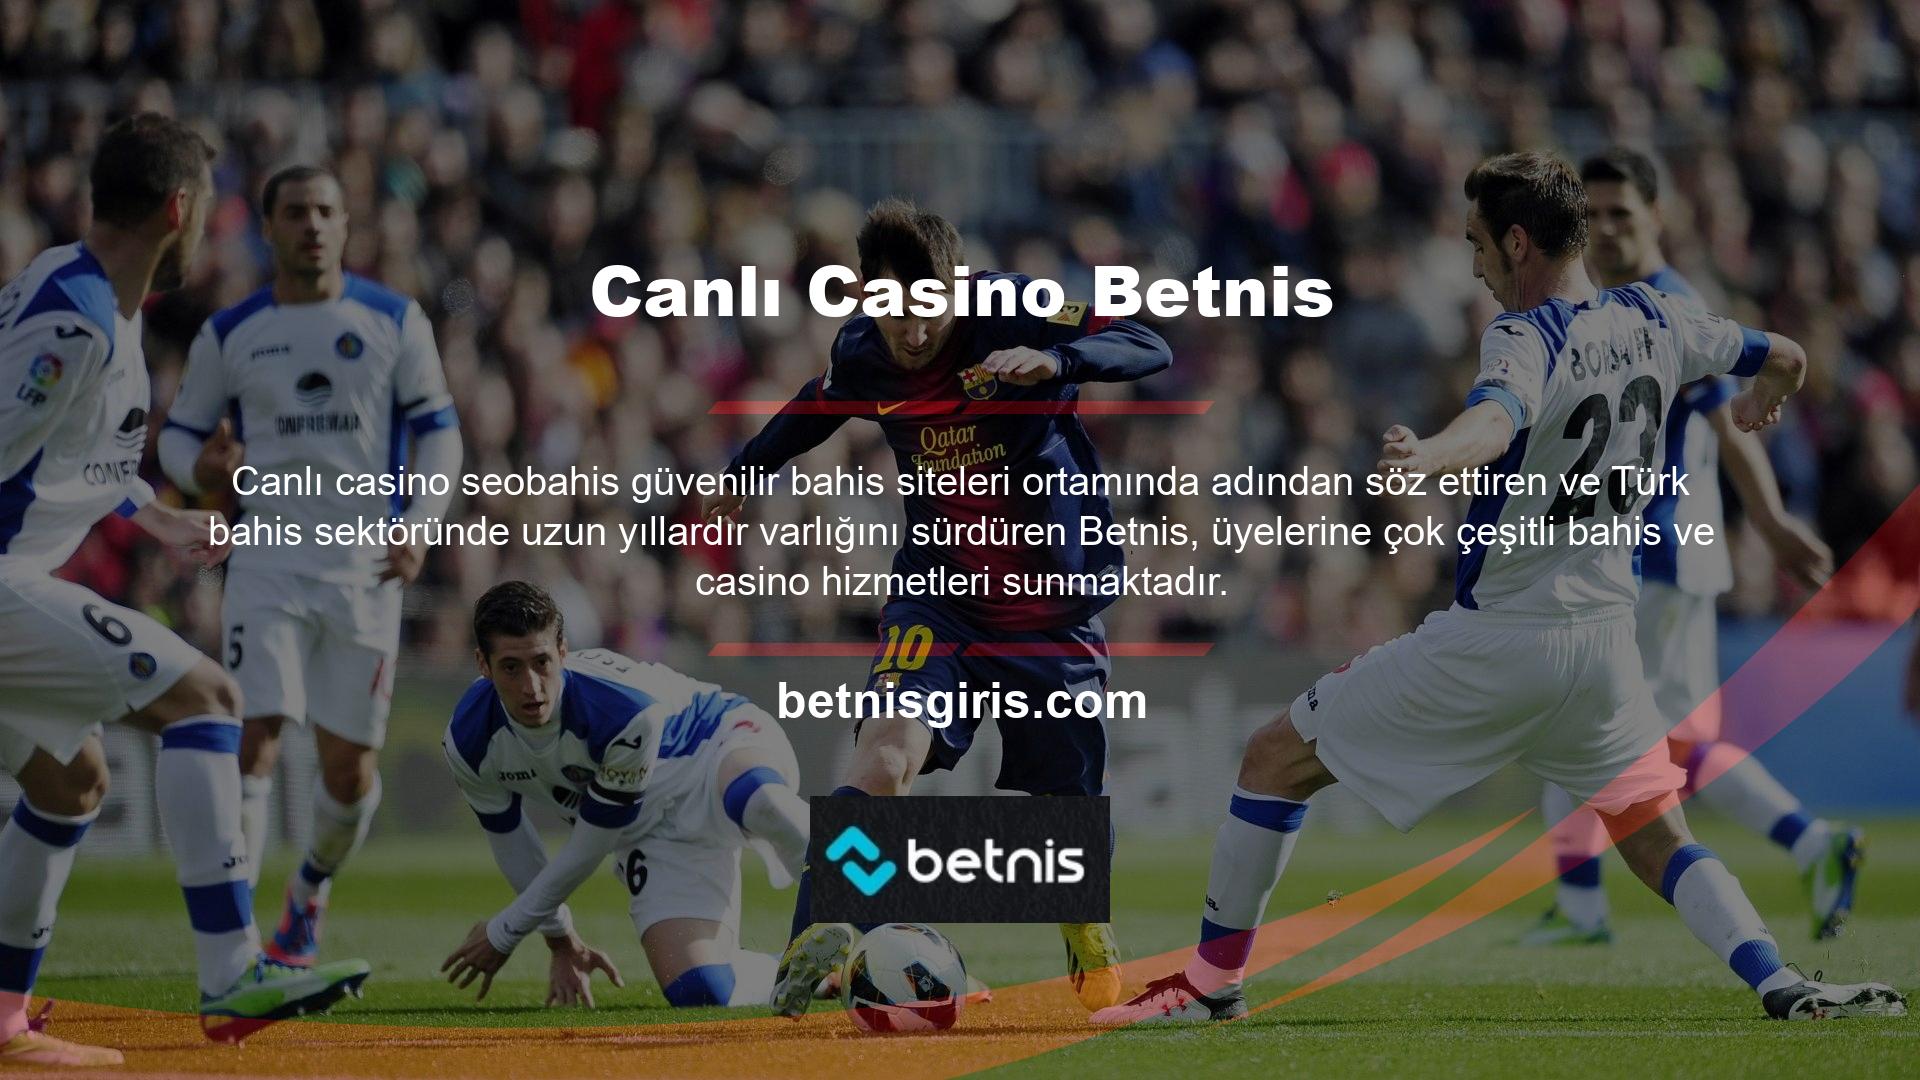 Bu hizmetlerden biri olan Betnis canlı casino ortamı, çok çeşitli oyun seçeneklerine, farklı krupiyelere ve farklı oyun sağlayıcılara sahiptir